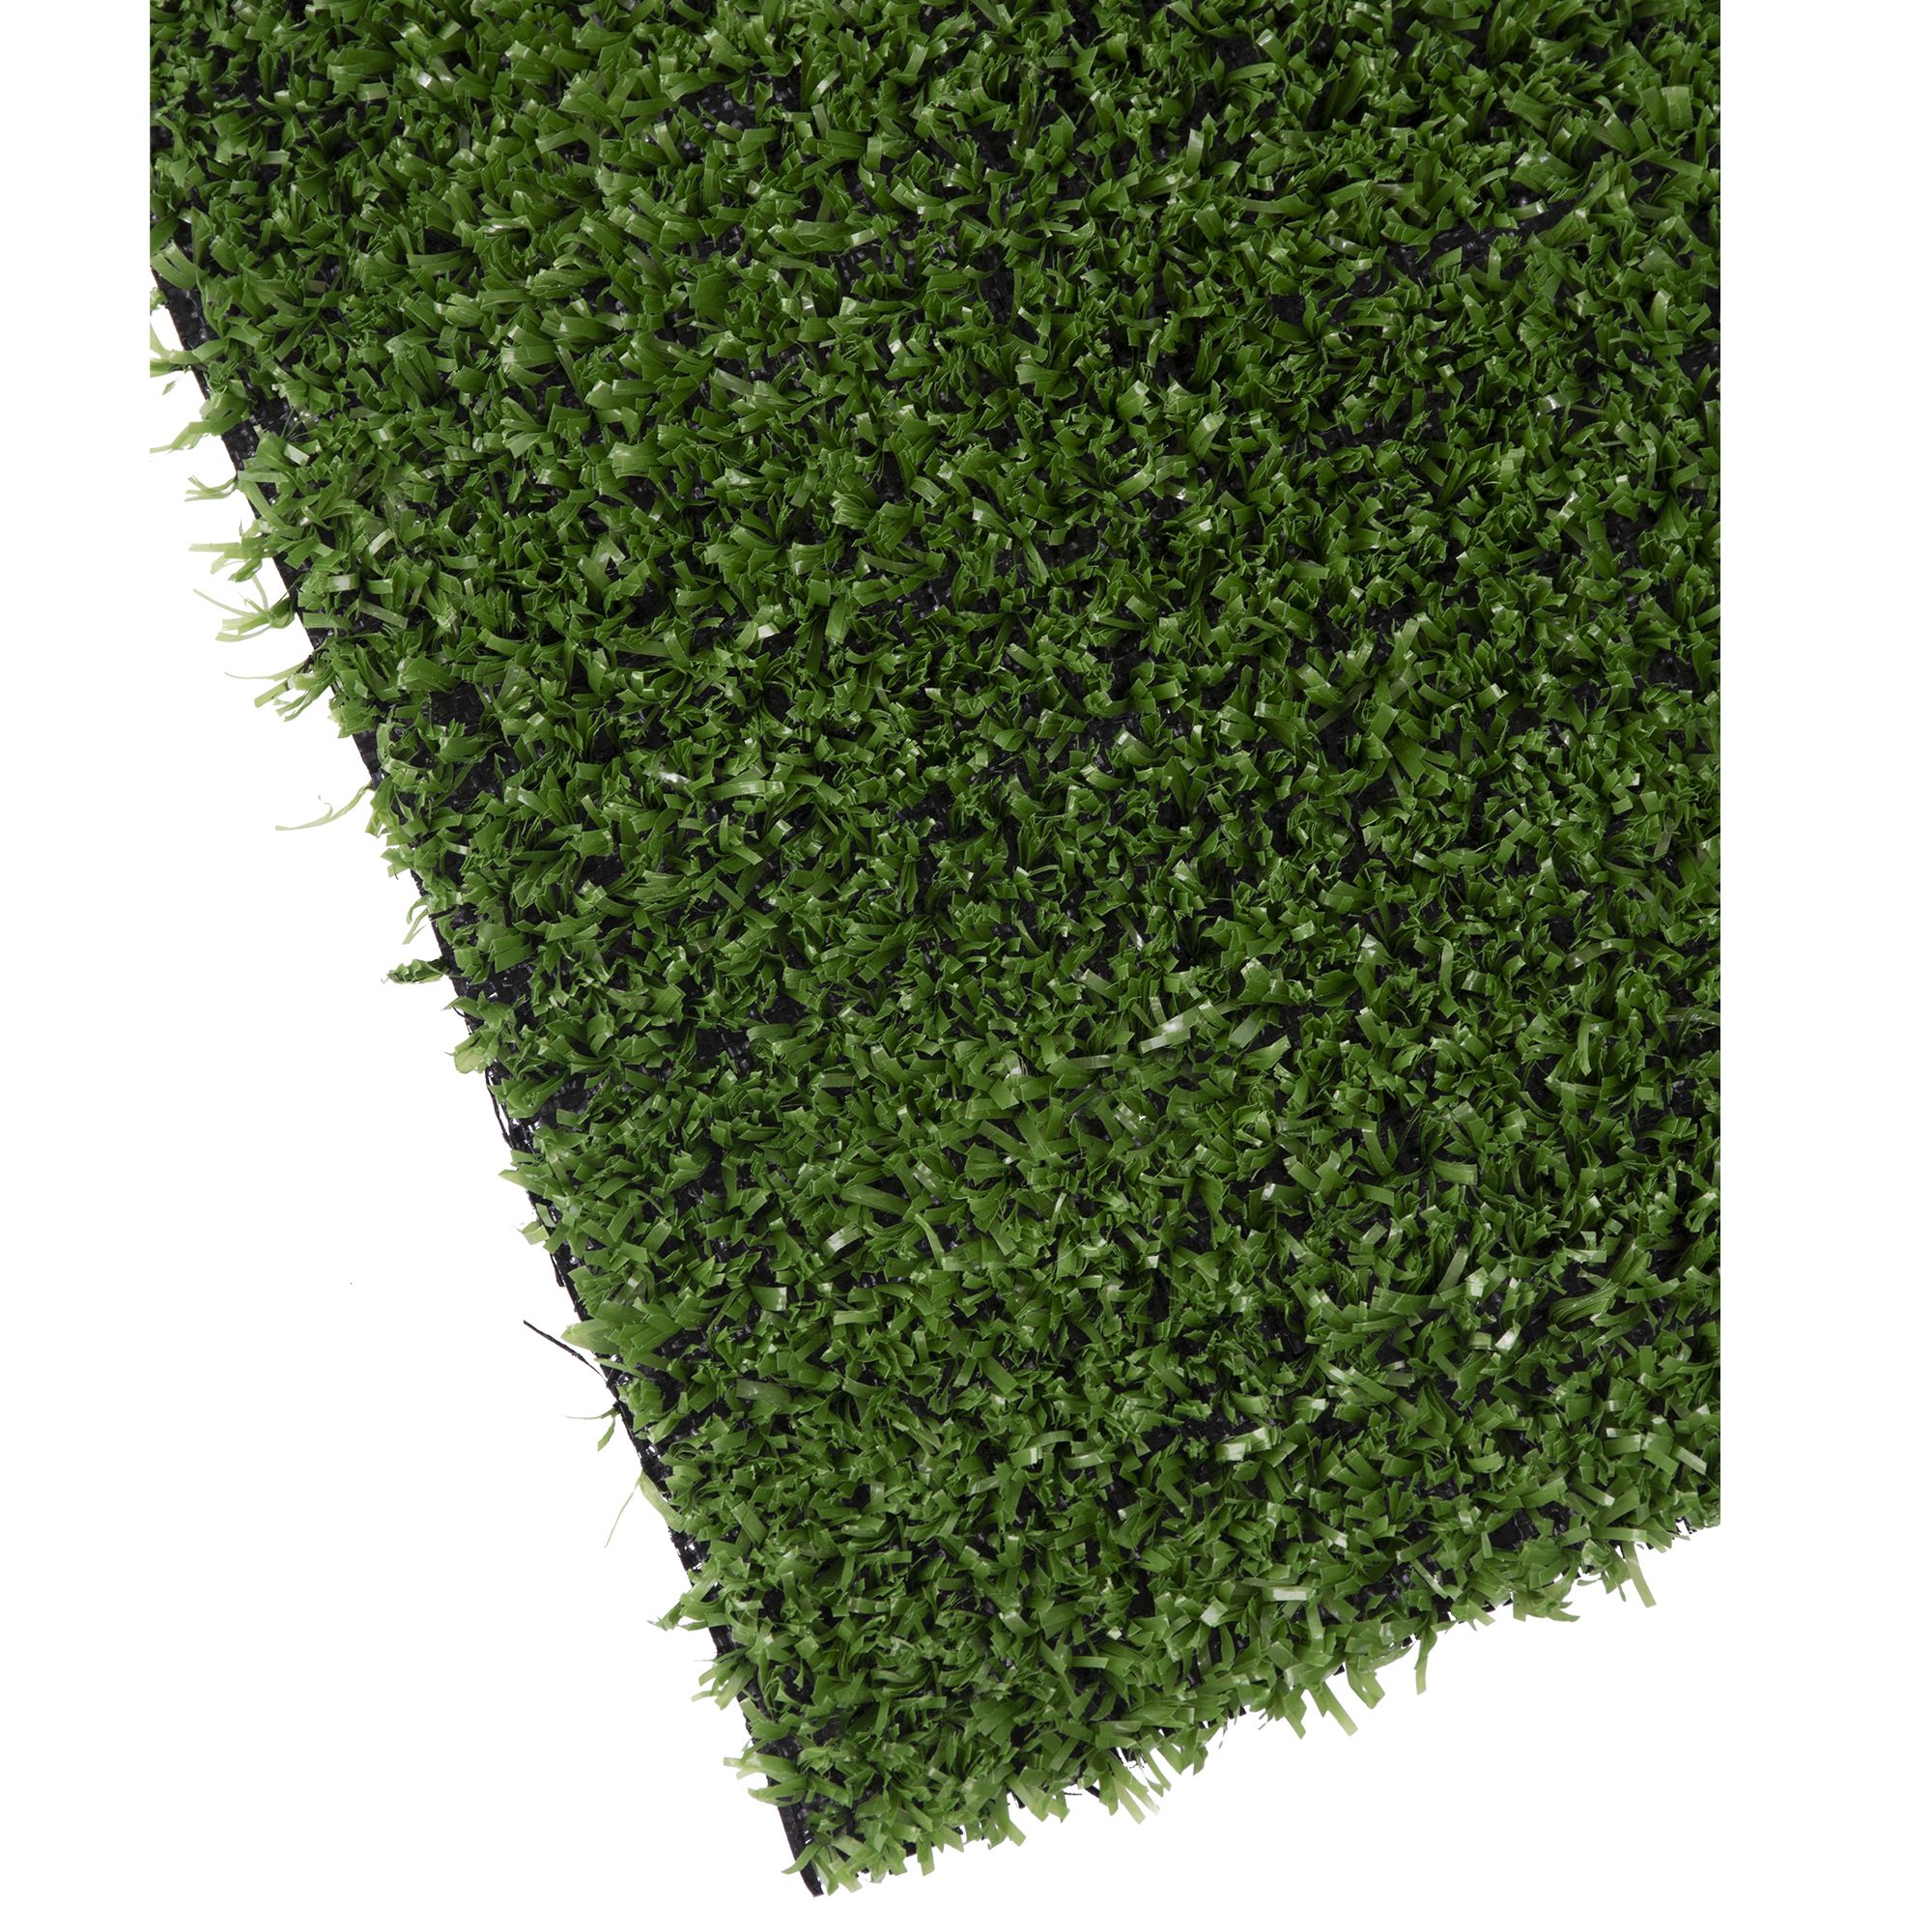 Umělý trávník, 7mm, 100cm x 3m, zelený, STREND PRO 2.100000 Kg GIGA Sklad20 2171695 7